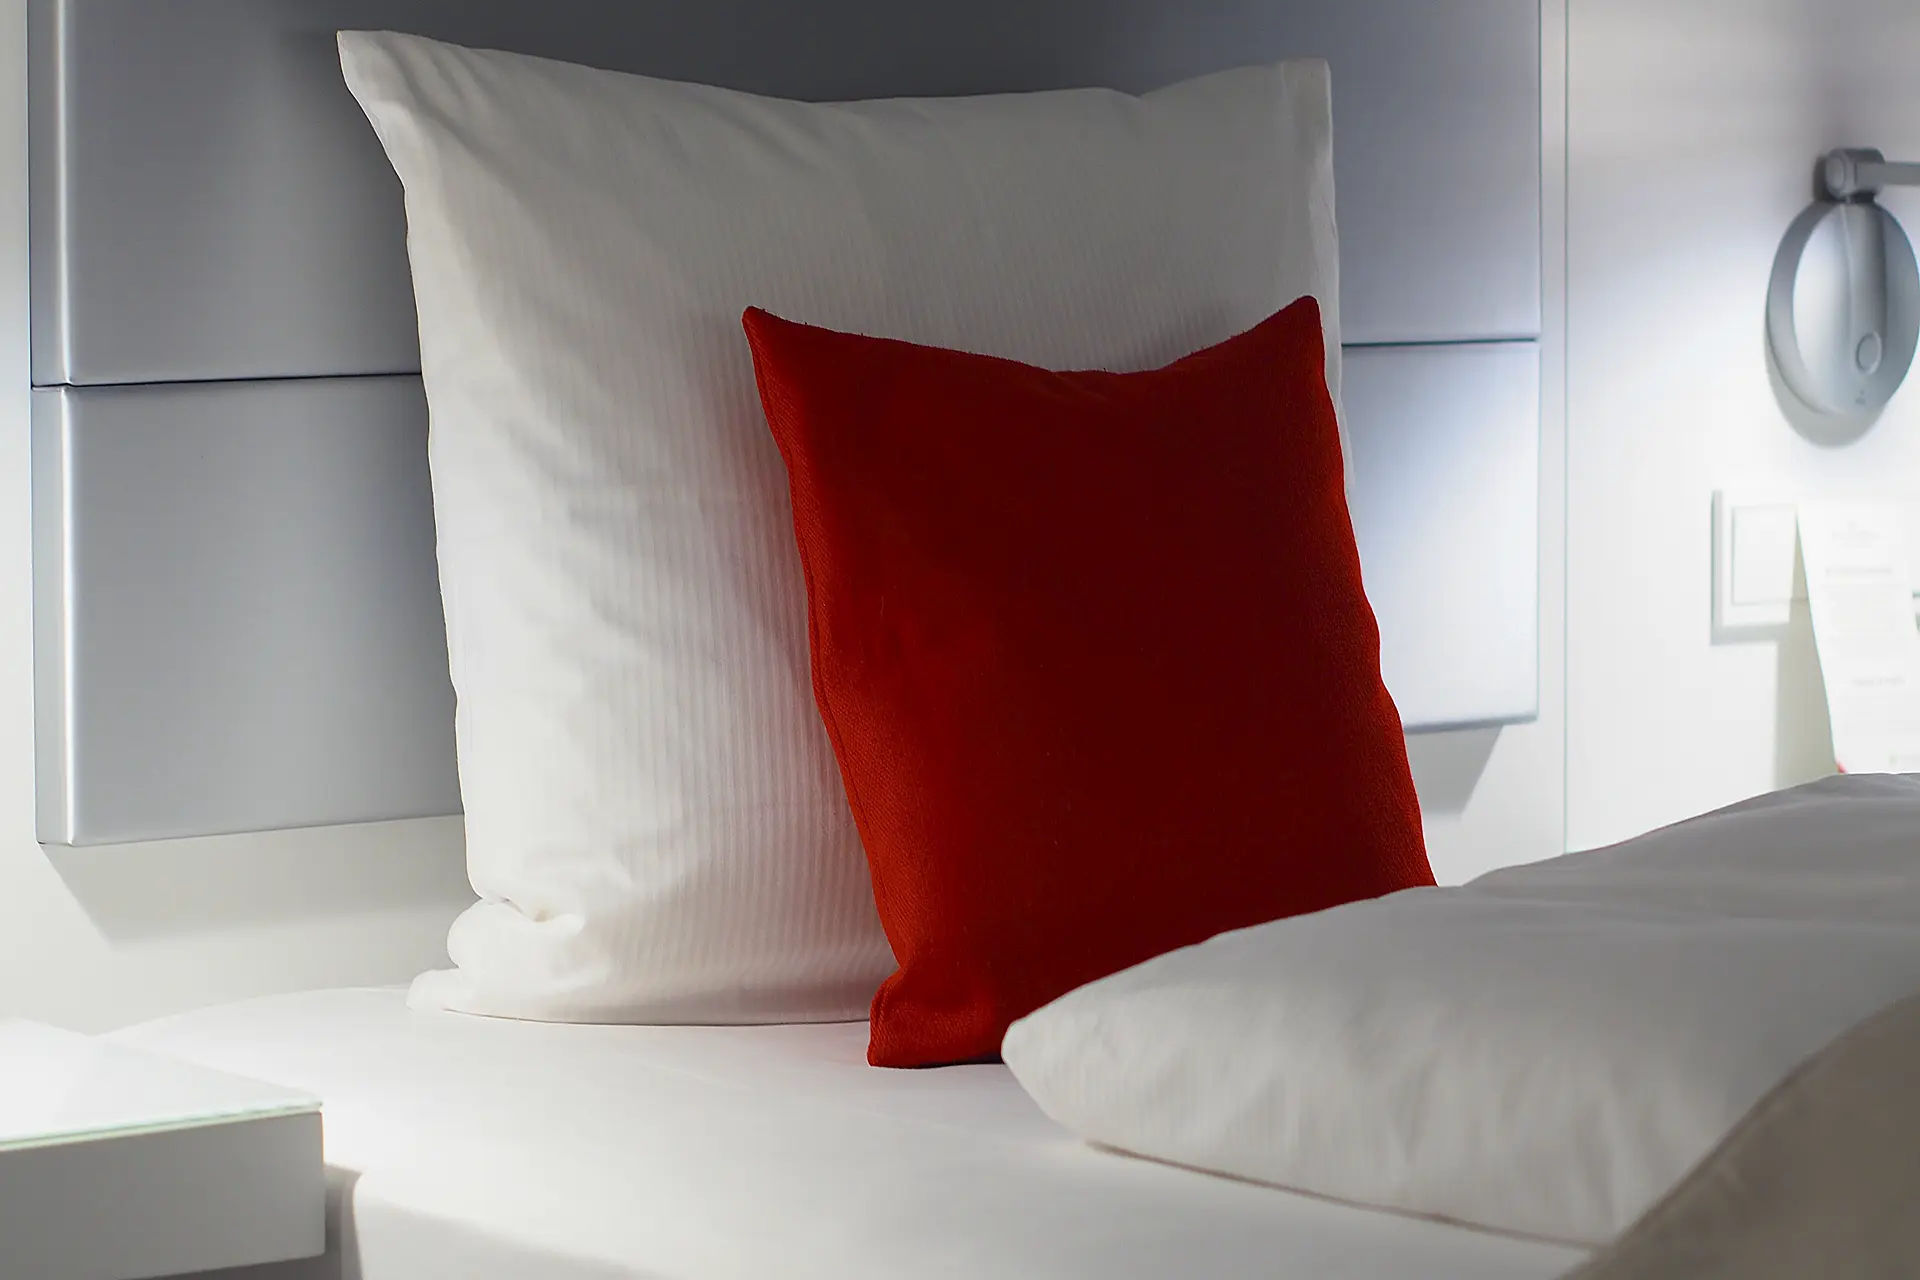 En este momento estás viendo Descubre qué significa el efecto duvet en las almohadas y cómo te beneficia